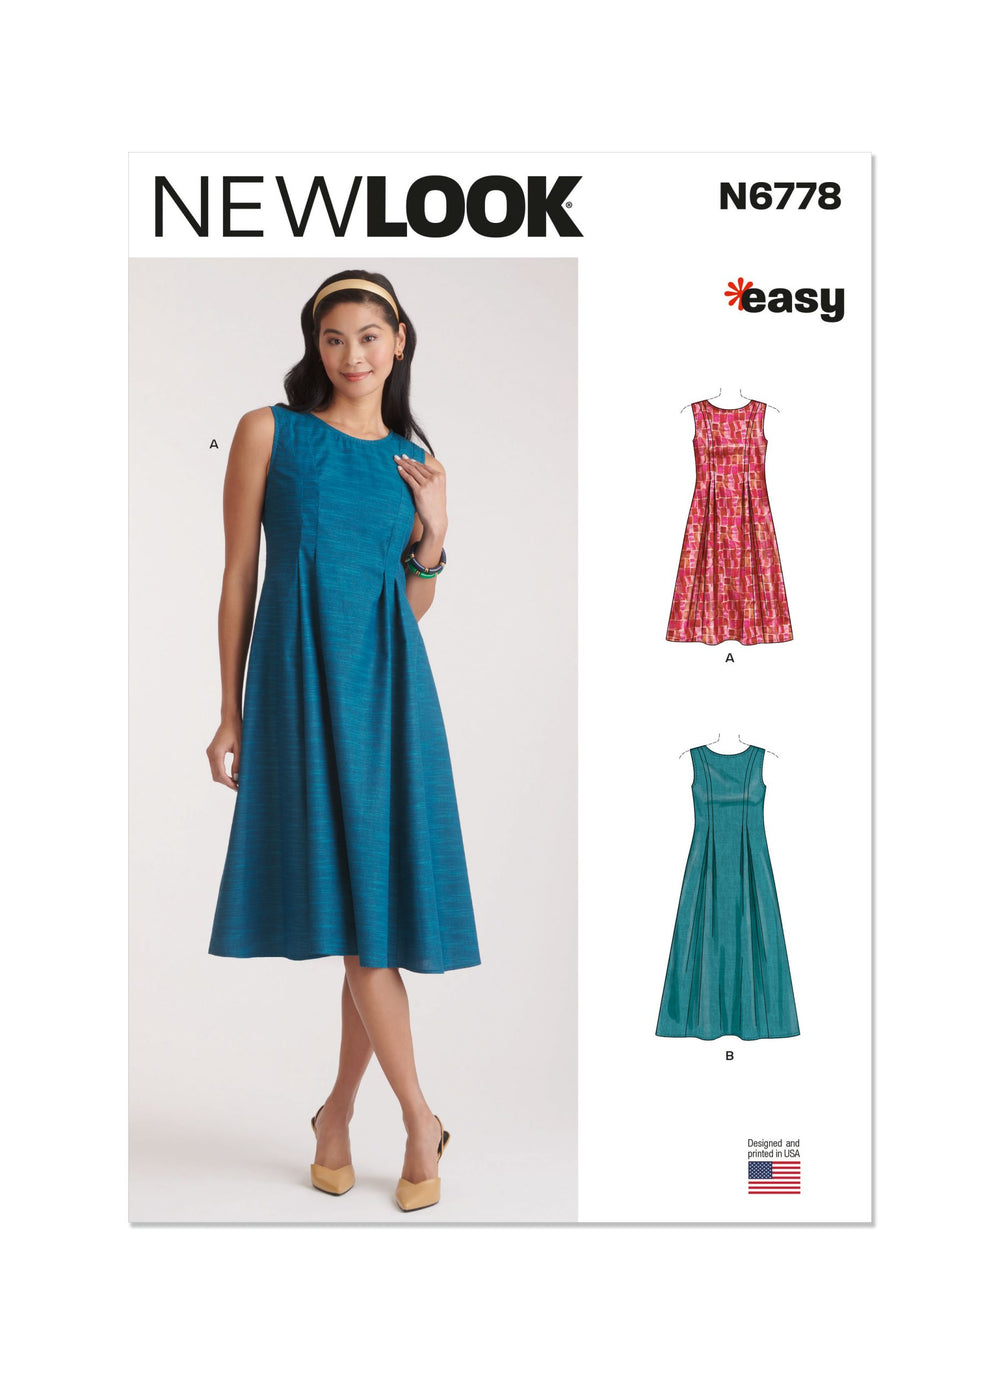 New Look Dress N6778